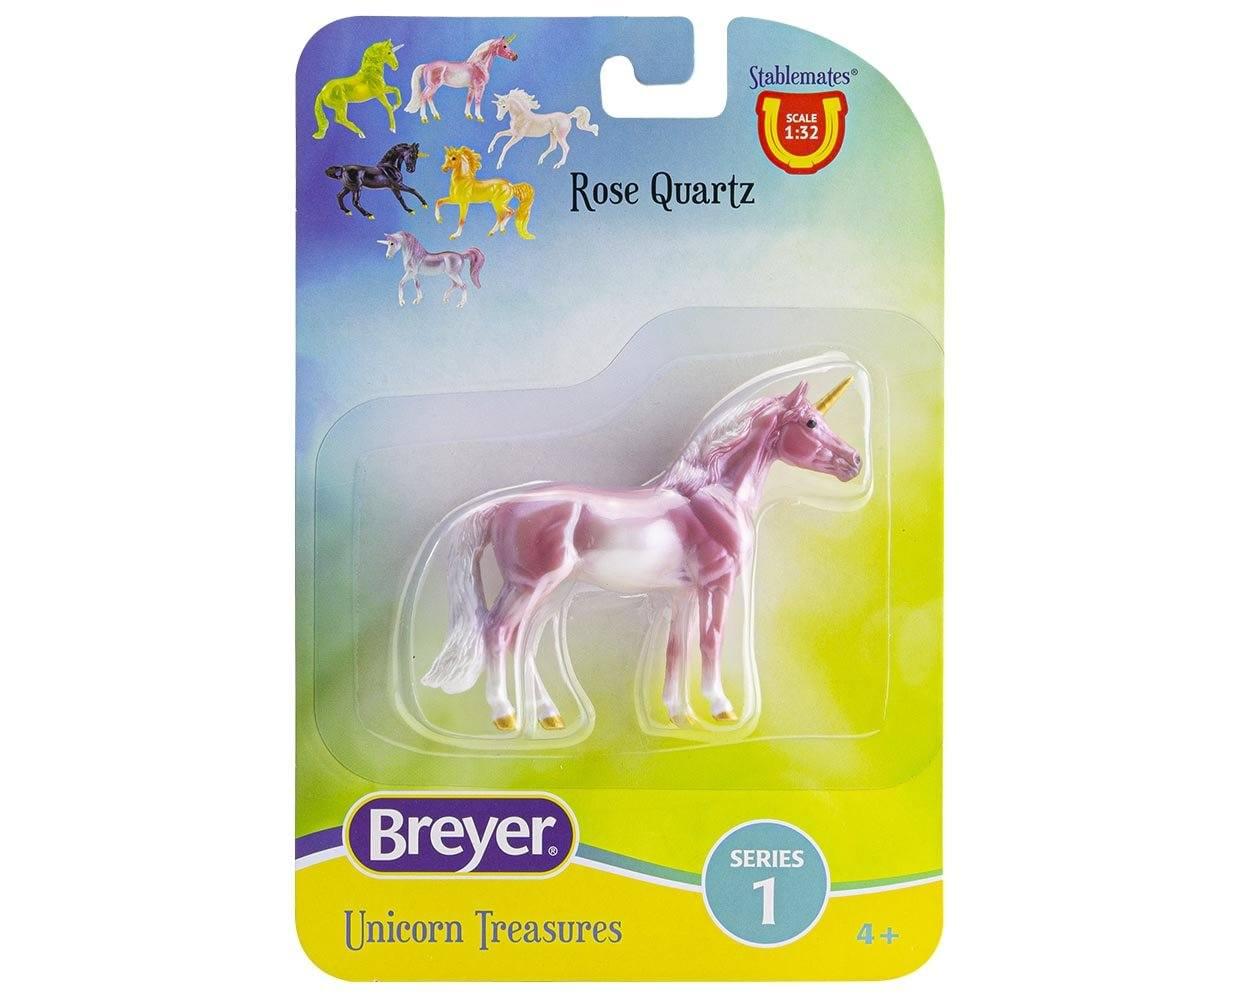 Breyer Unicorn Treasures 1:32 Scale Model Horse | Rose Quartz